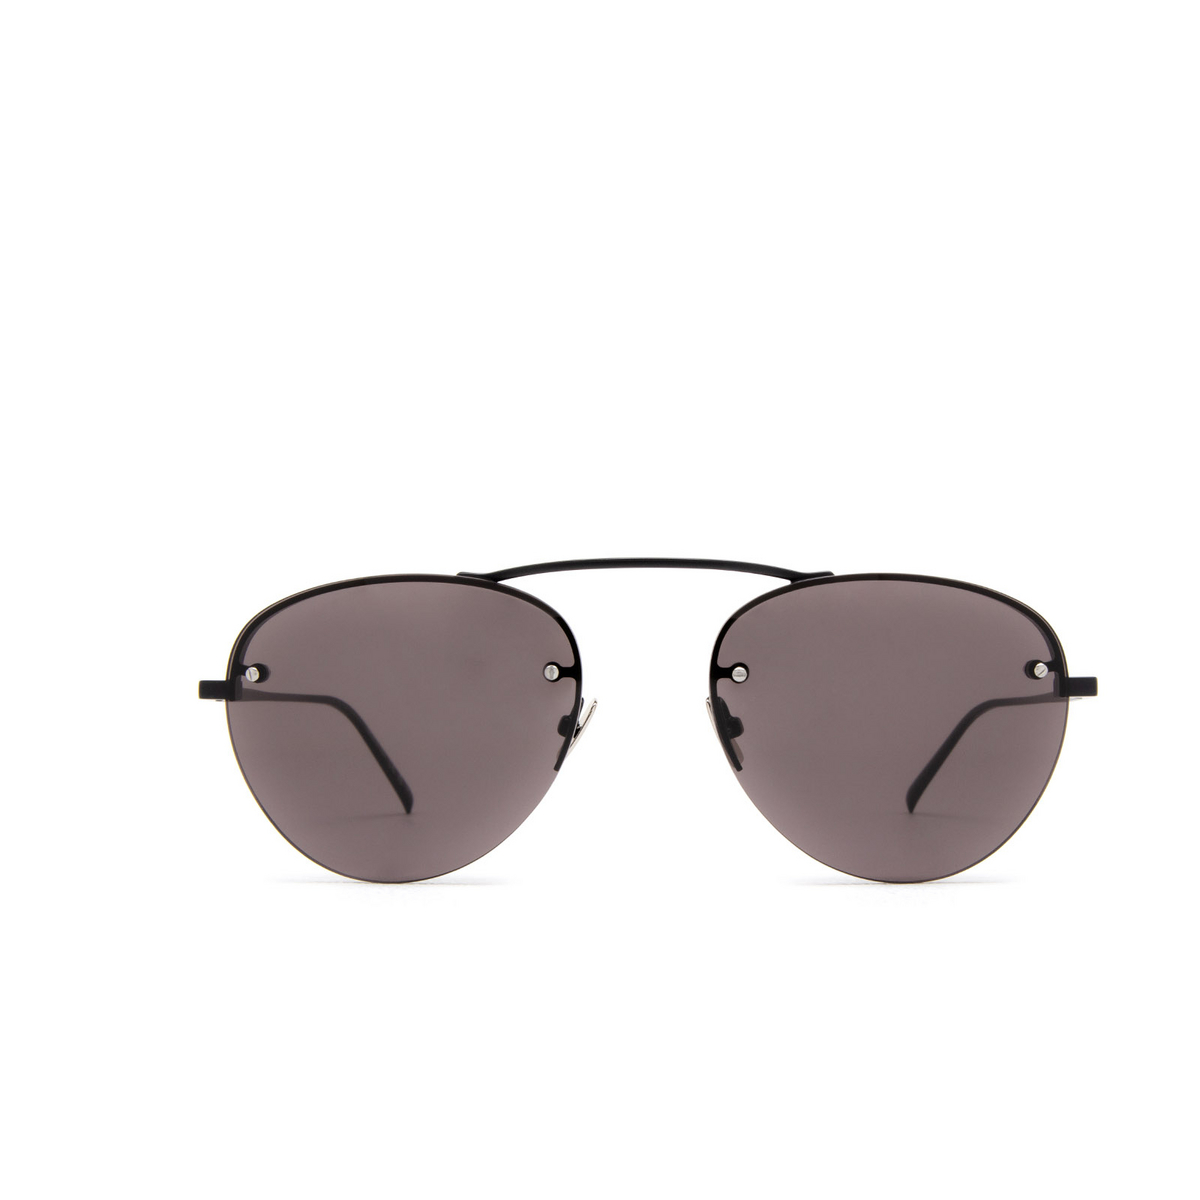 Saint Laurent SL 575 Sunglasses 001 Black - front view